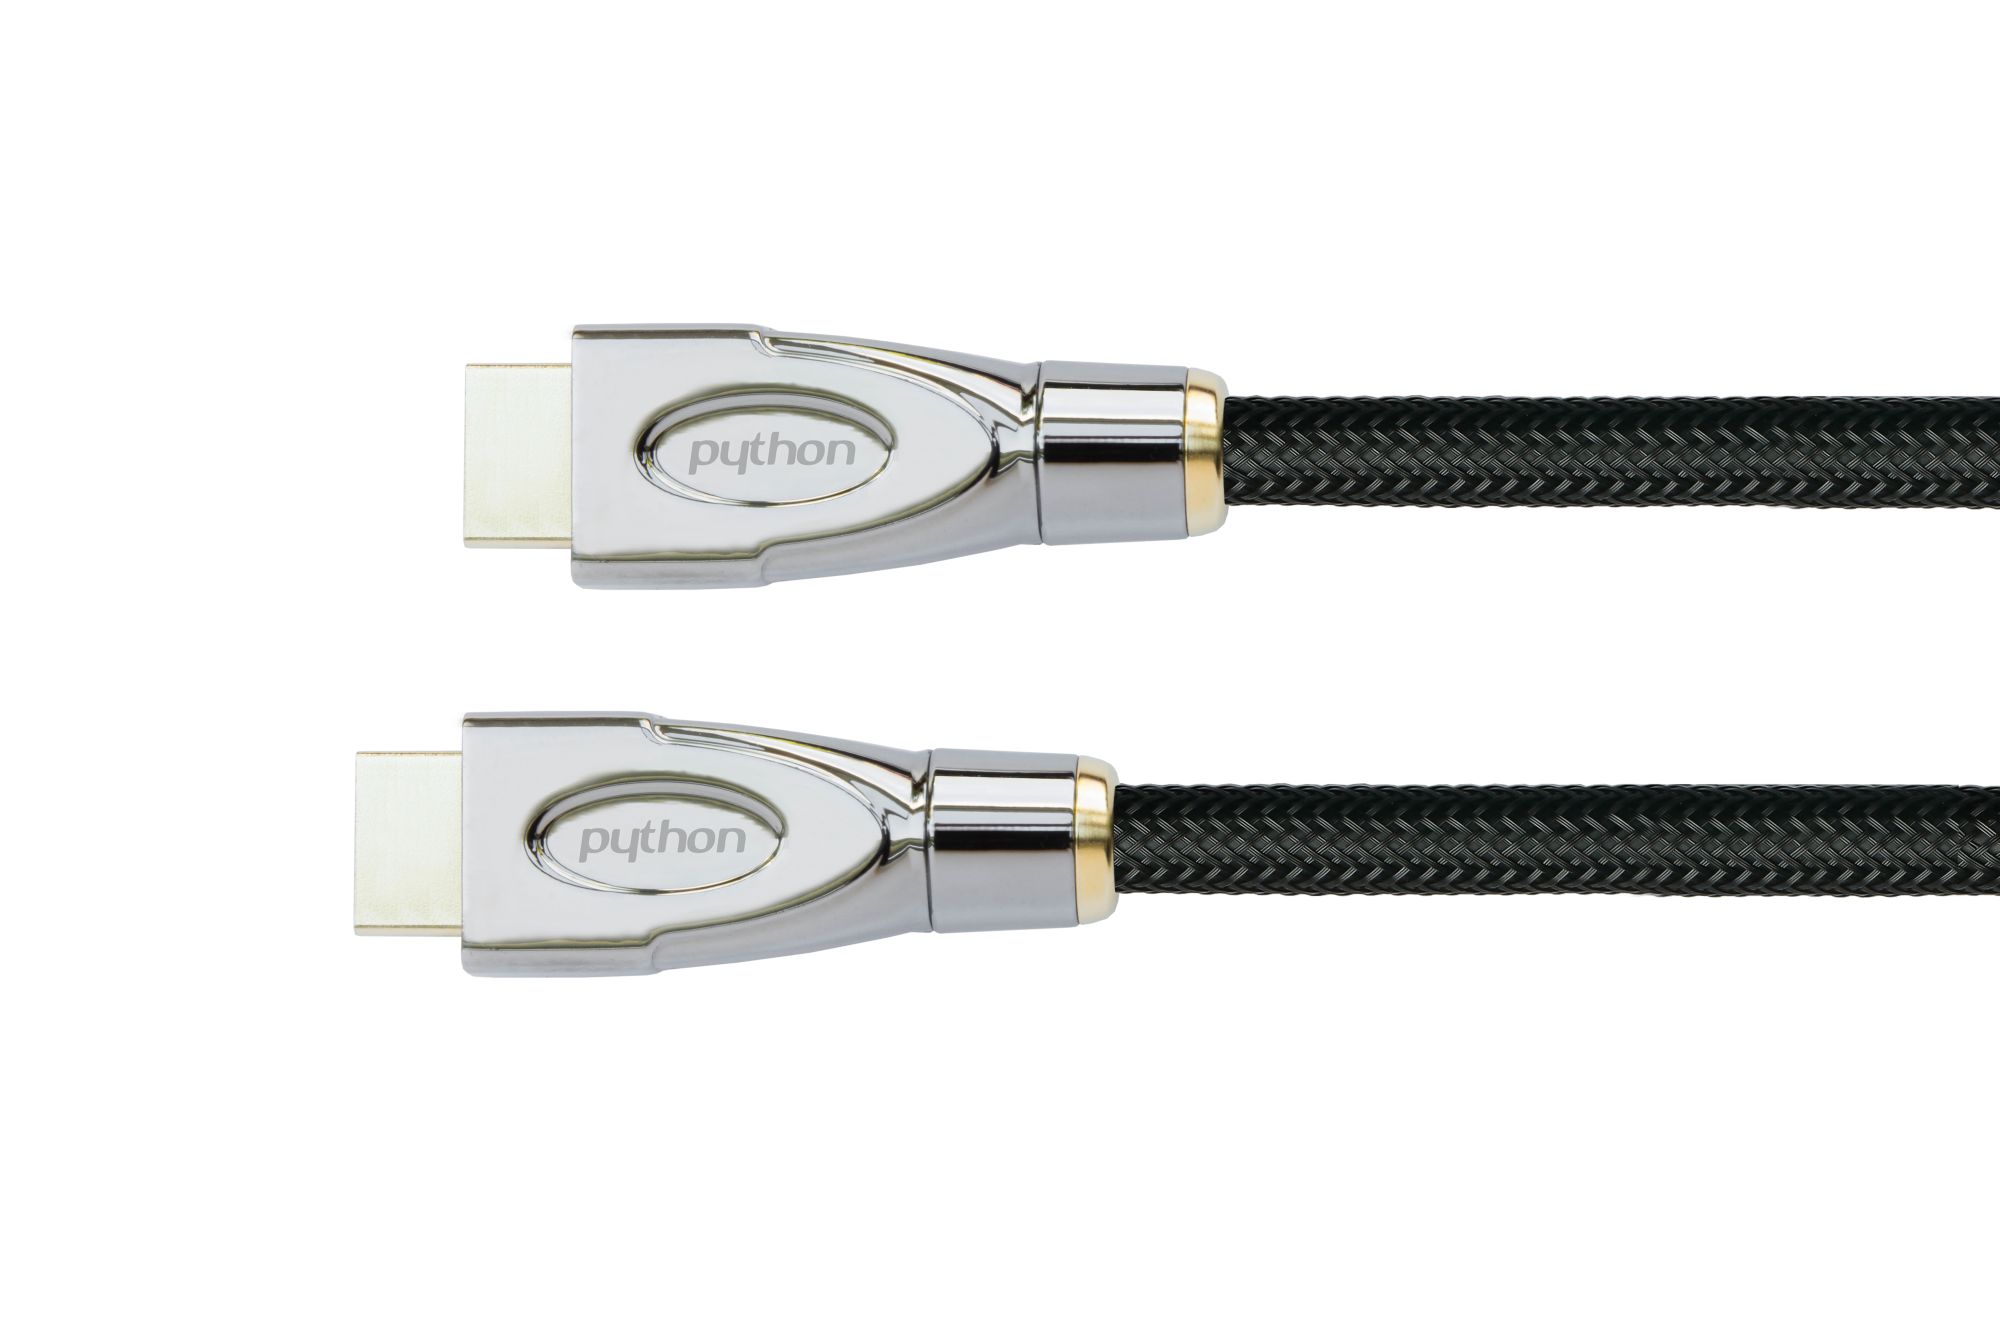 Anschlusskabel High-Speed-HDMI® mit Ethernet 4K2K/UHD, AKTIV (Redmere Chips), Nylobgefl. schwarz,20m